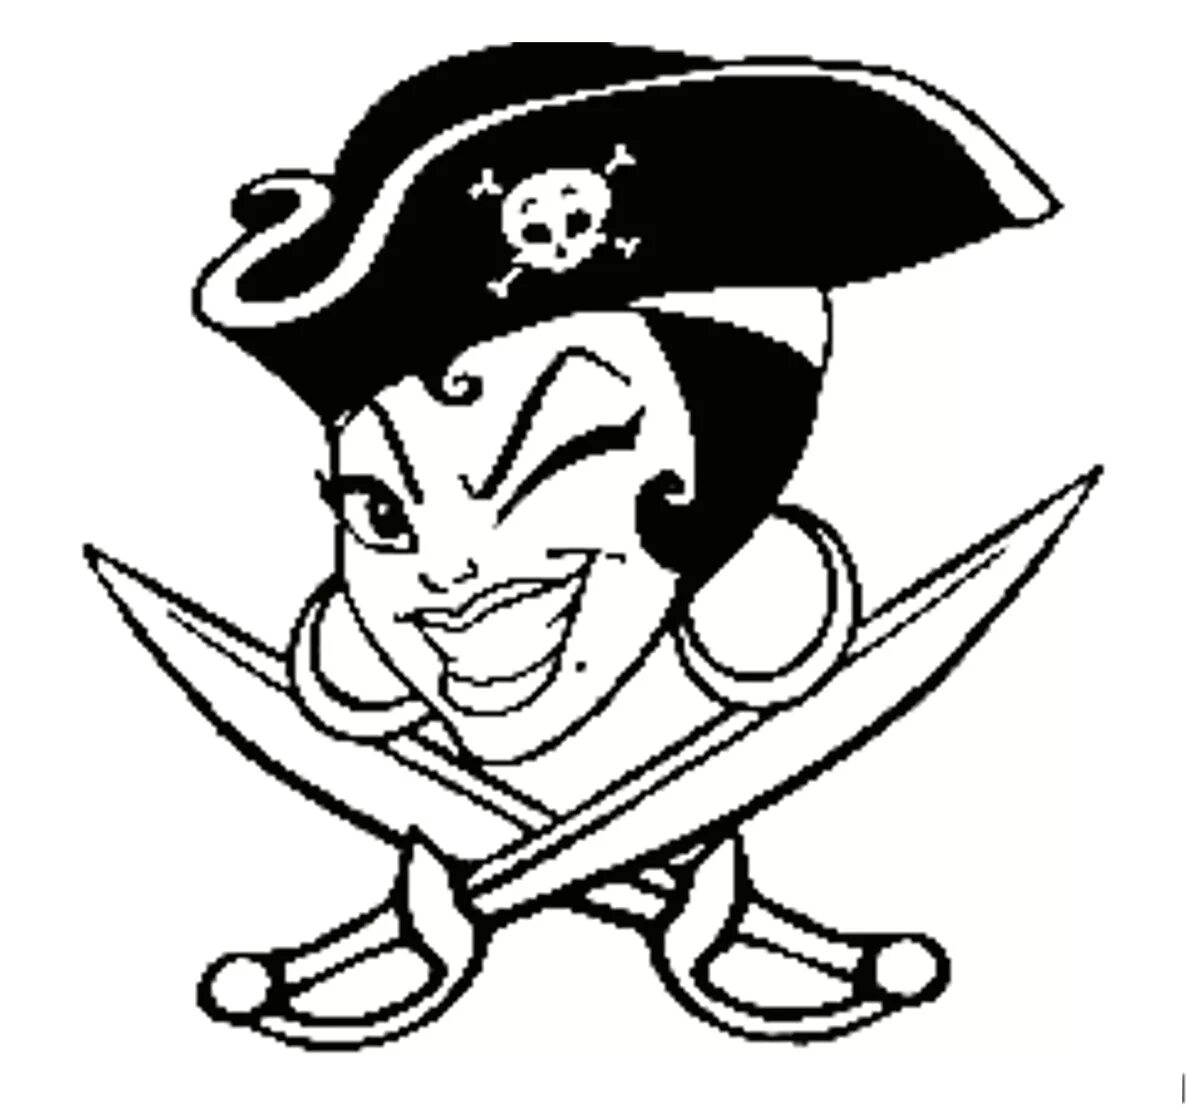 Пиратская ж. Пиратский знак. Эмблема пиратов. Пират рисунок. Пиратские узоры.